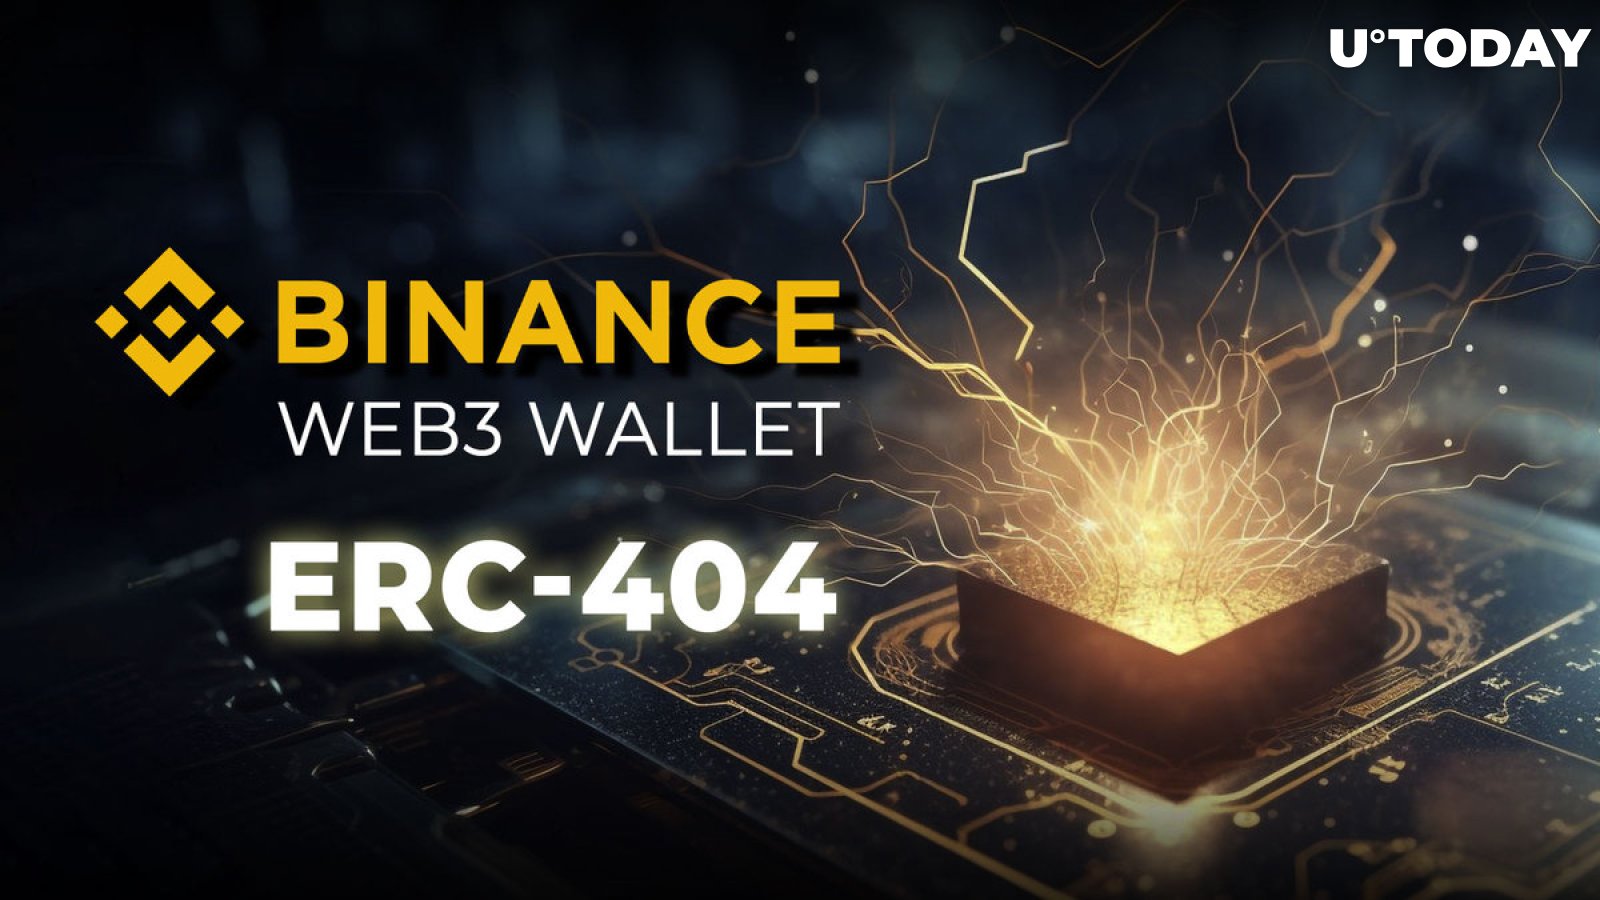 Binance Web3 Wallet kündigt großes Krypto-Geschenk zur Feier der ERC-404-Integration an